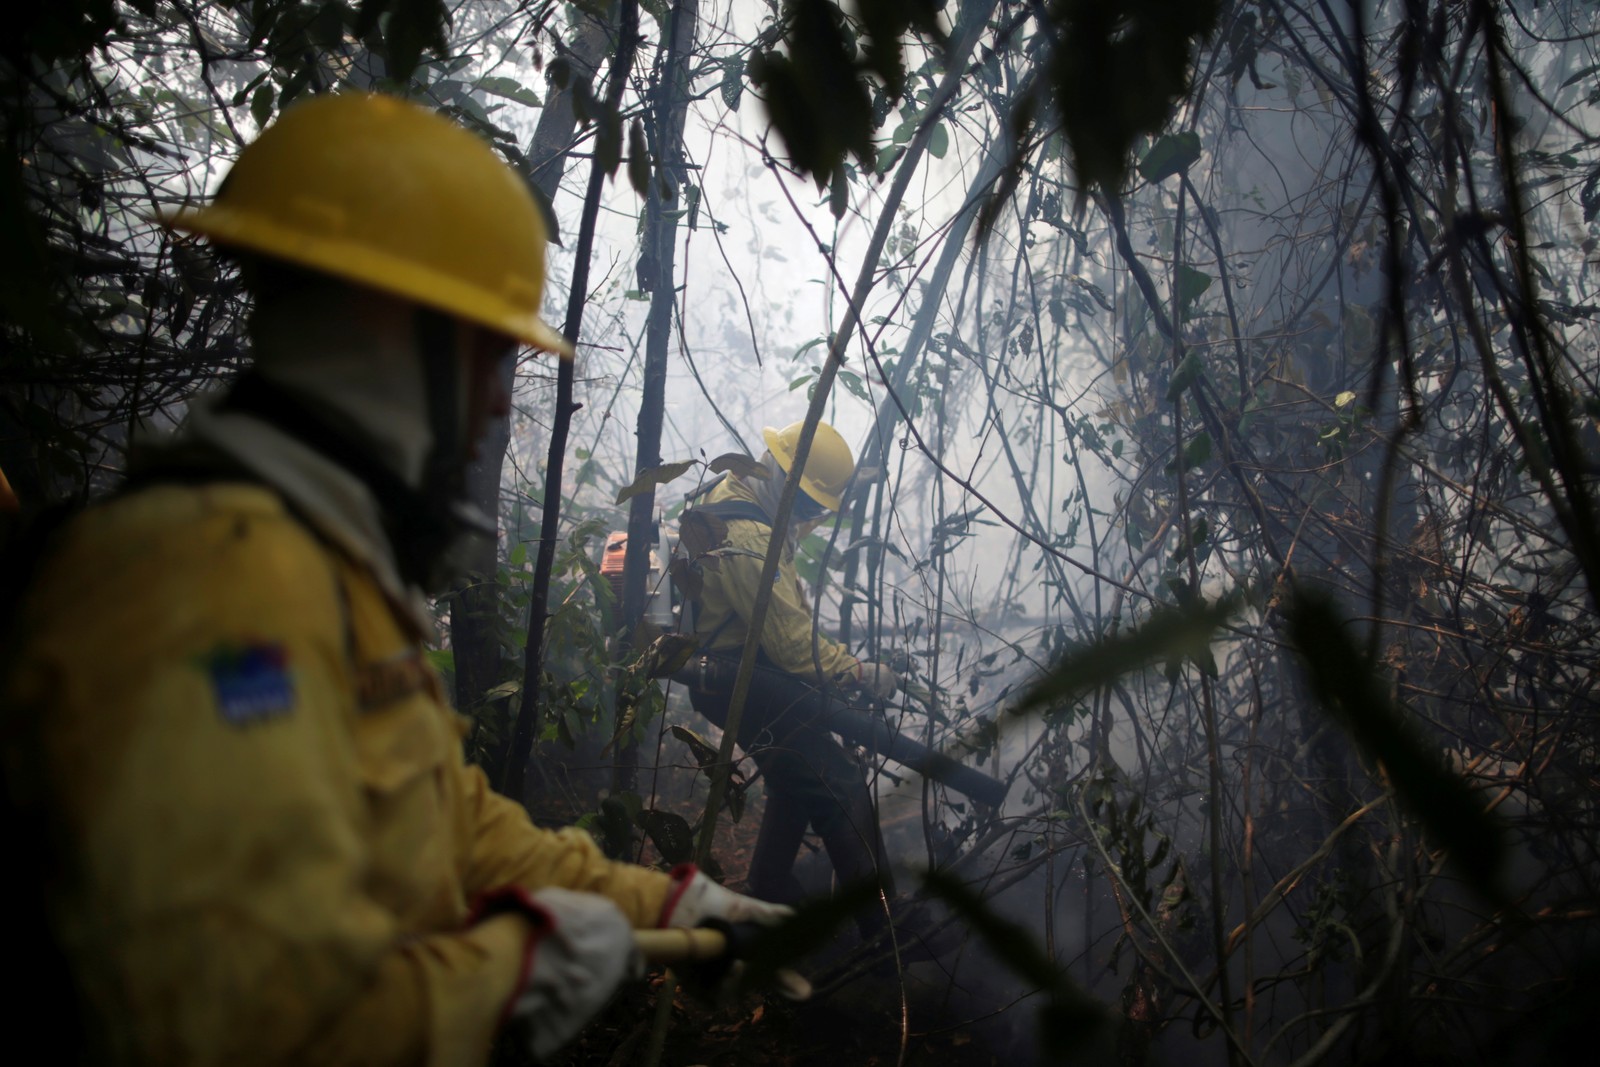 Membro da brigada de incêndio do Instituto Brasileiro do Meio Ambiente e dos Recursos Naturais Renováveis (Ibama) tenta controlar um incêndio em uma área da floresta amazônica em Apuí, no AmazonasREUTERS